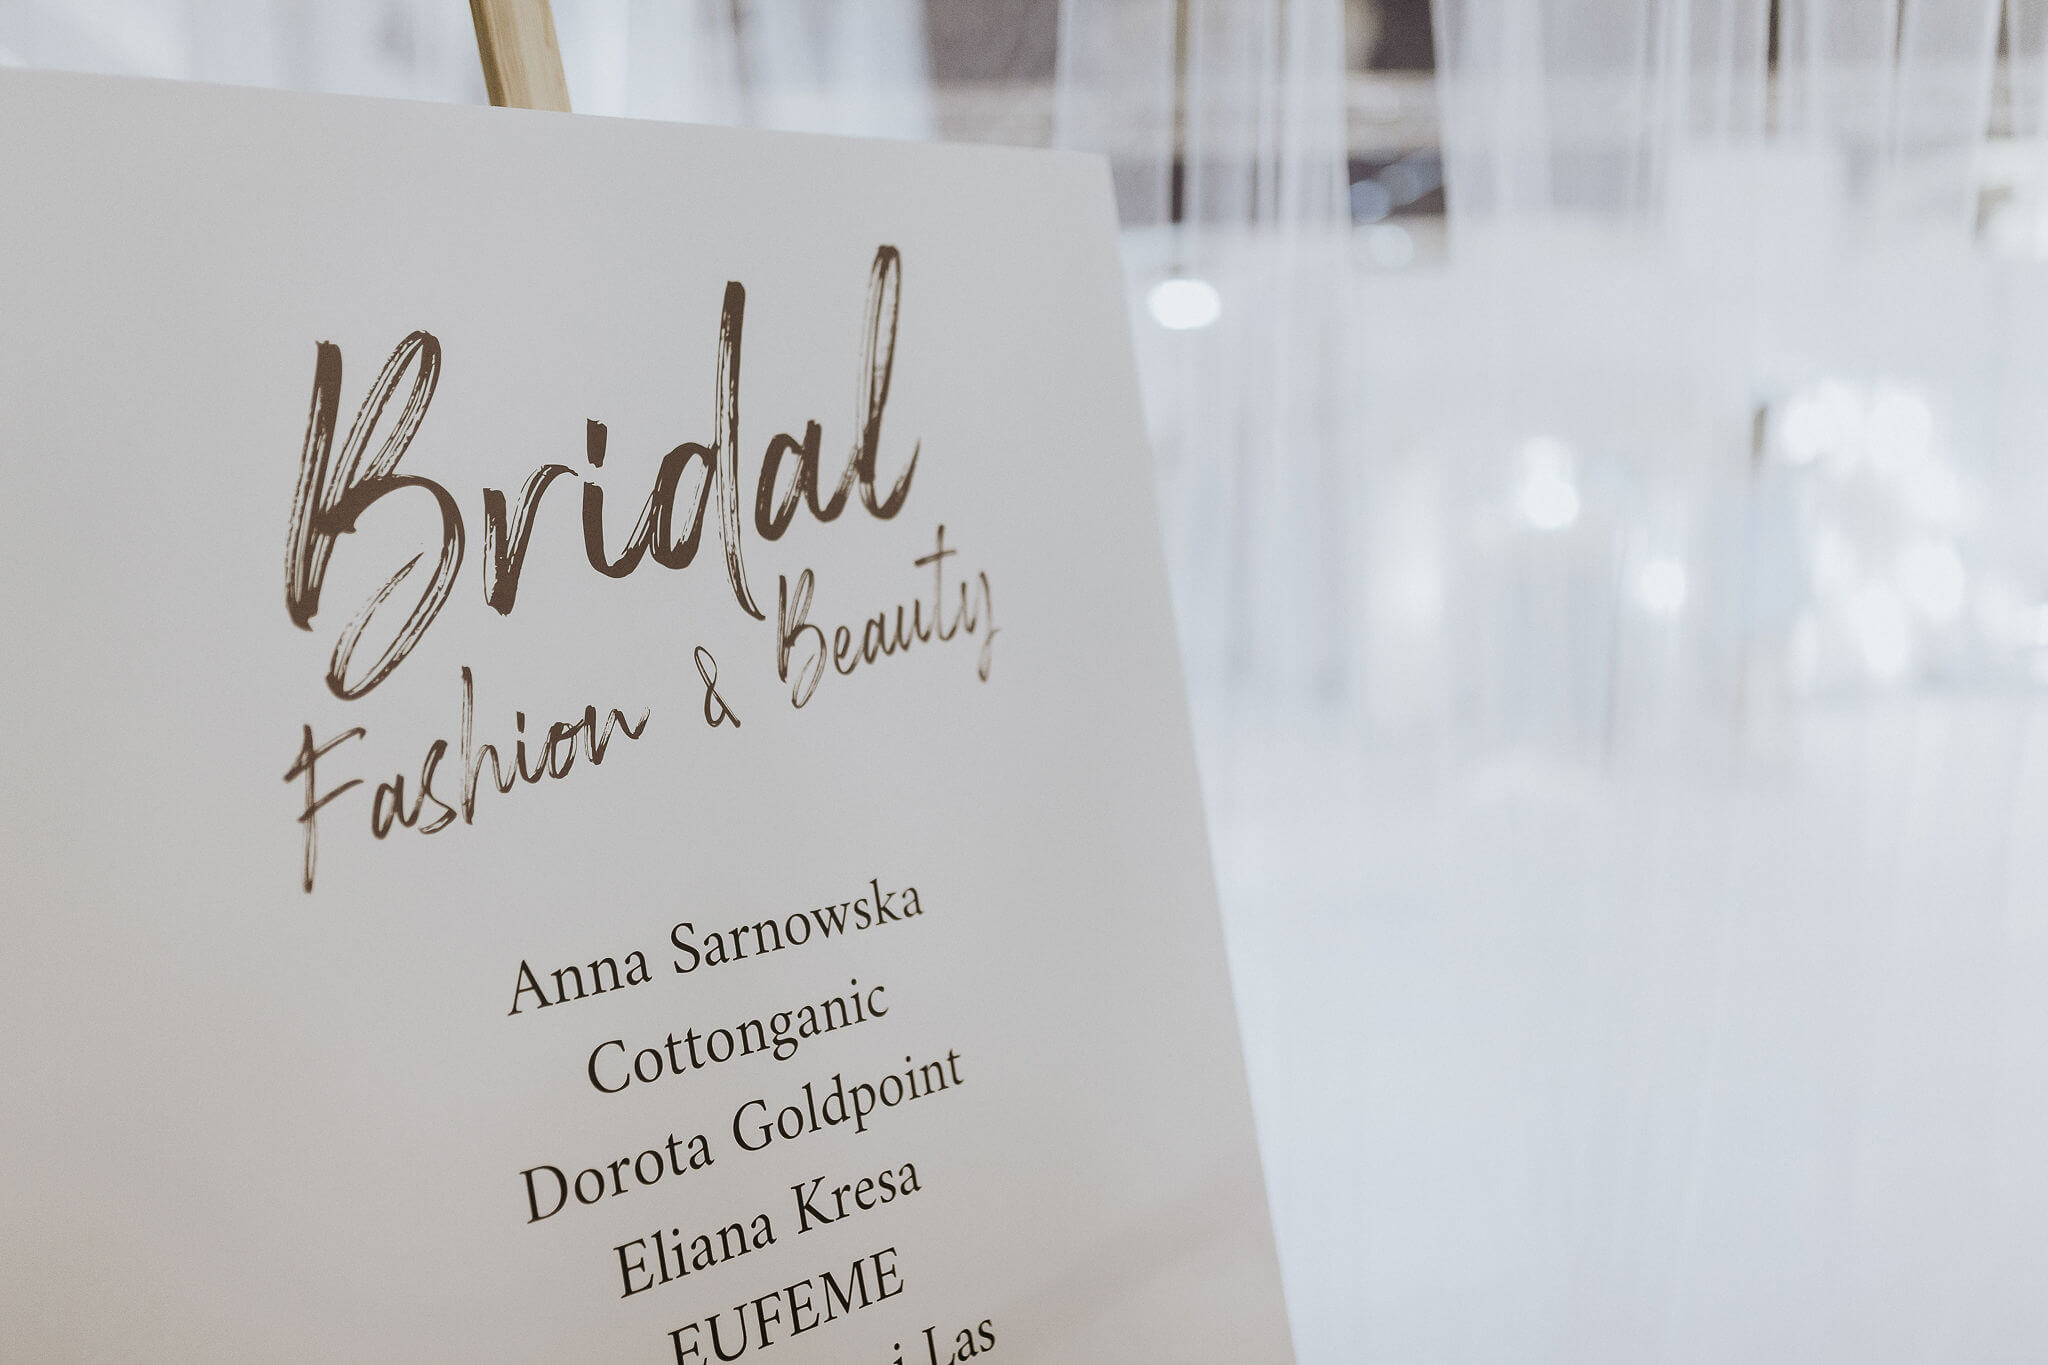 Tablica informacyjna z nazwami firm strefy Bridal Fashion & Beauty na Targach Młodej Pary w Warszawie.